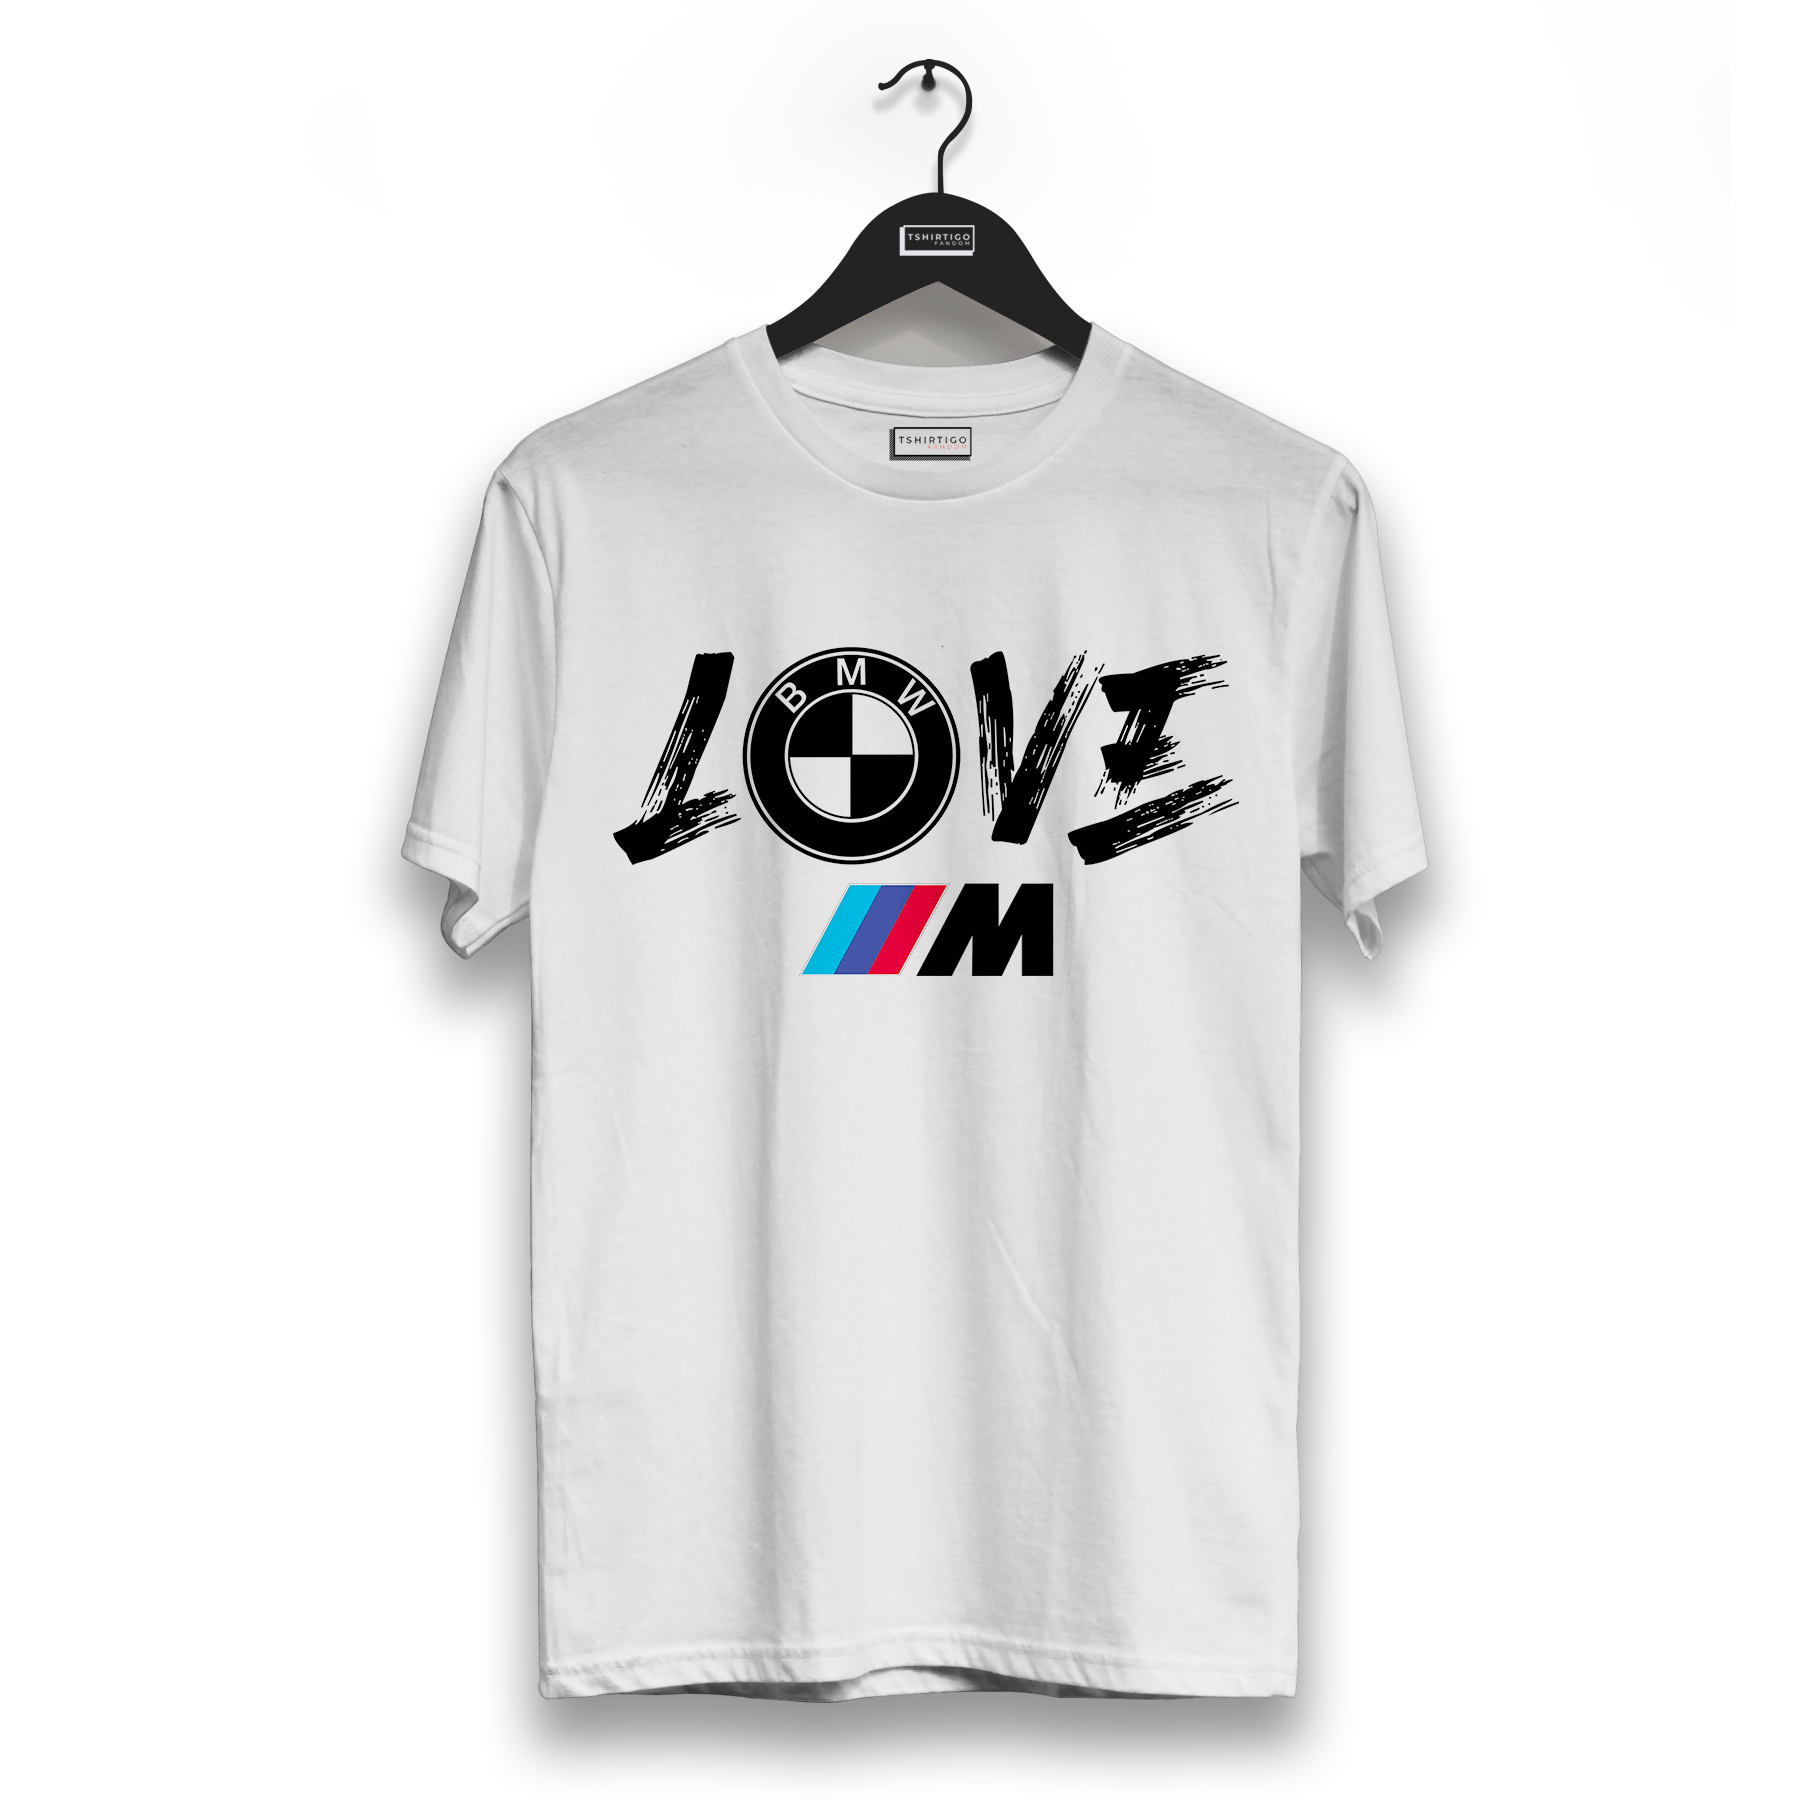 BMW M Power White Line T-Shirt  Shirts, Mens tshirts, Performance shirts